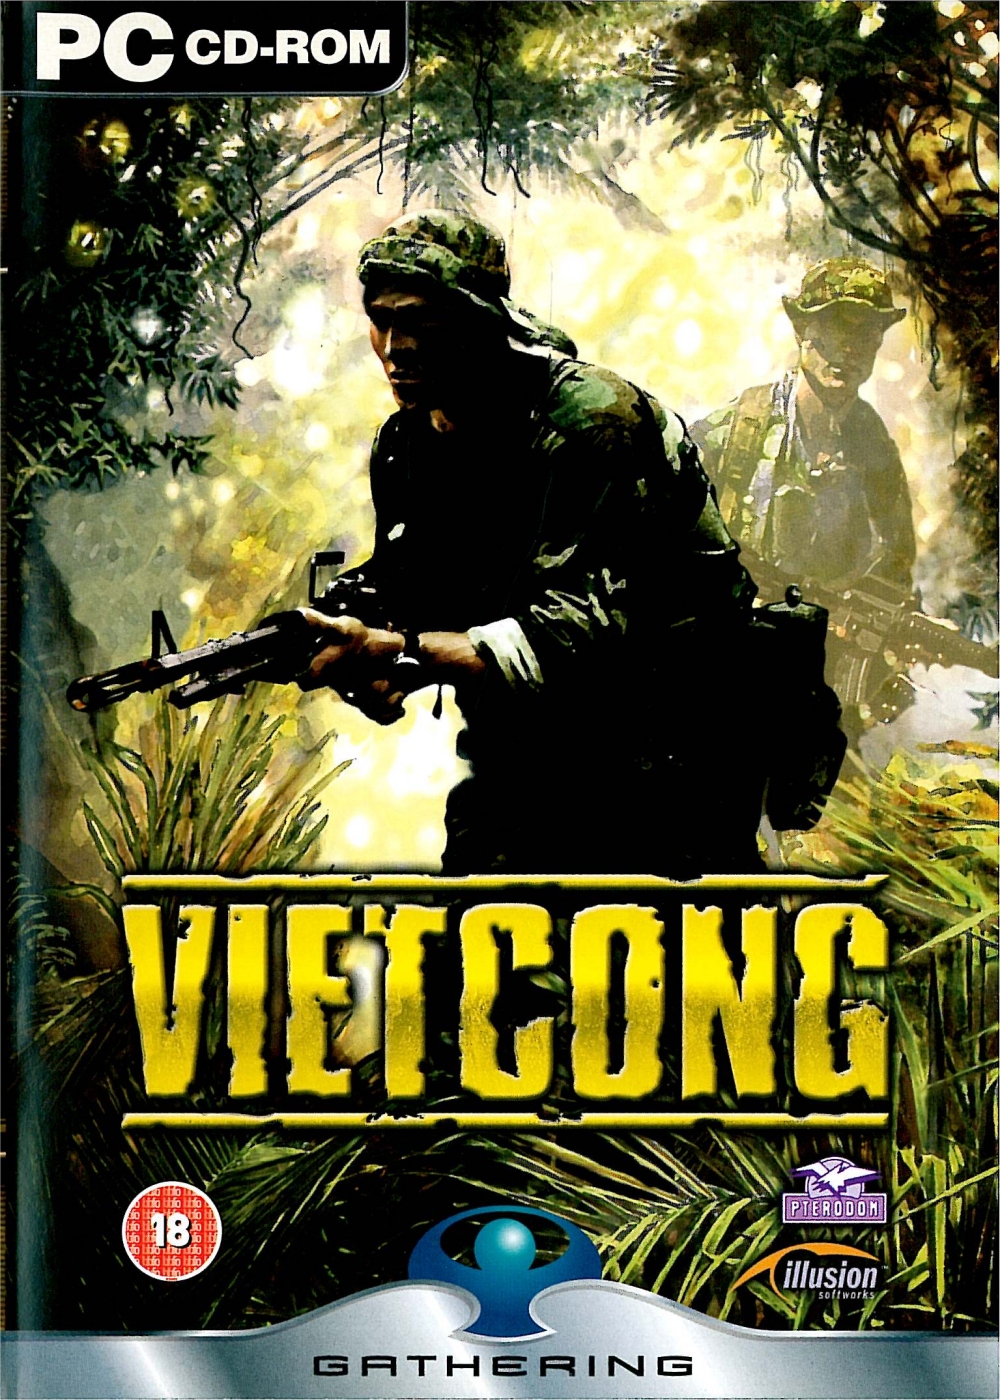 jaquette du jeu vidéo Vietcong